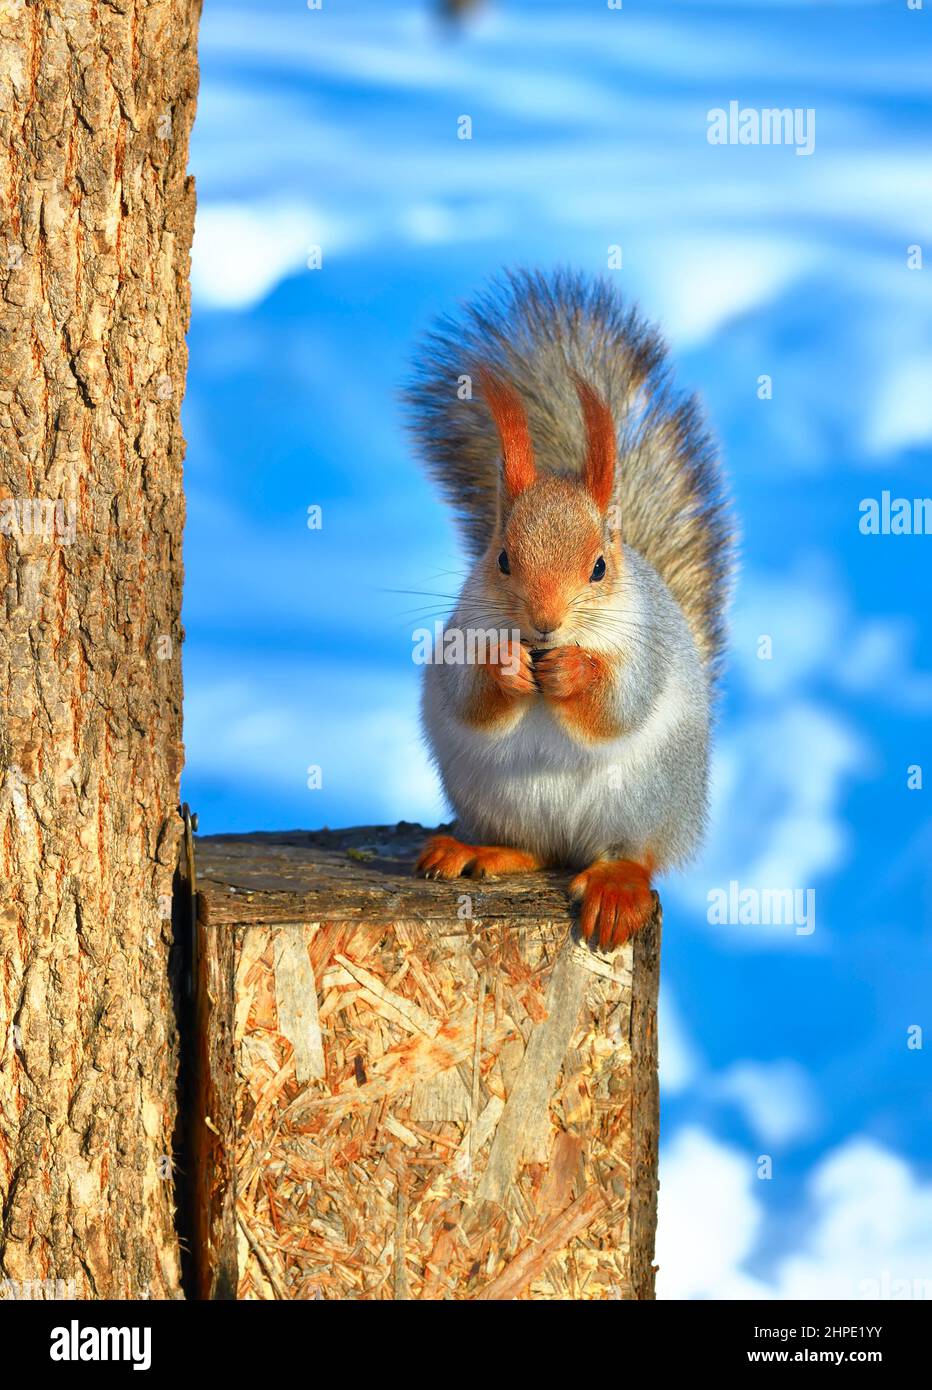 Écureuil sur un arbre en hiver. Un animal de la forêt avec la fourrure d'hiver est assis sur un convoyeur en bois sur un fond flou. Région de Novosibirsk, Sibérie, Russie Banque D'Images